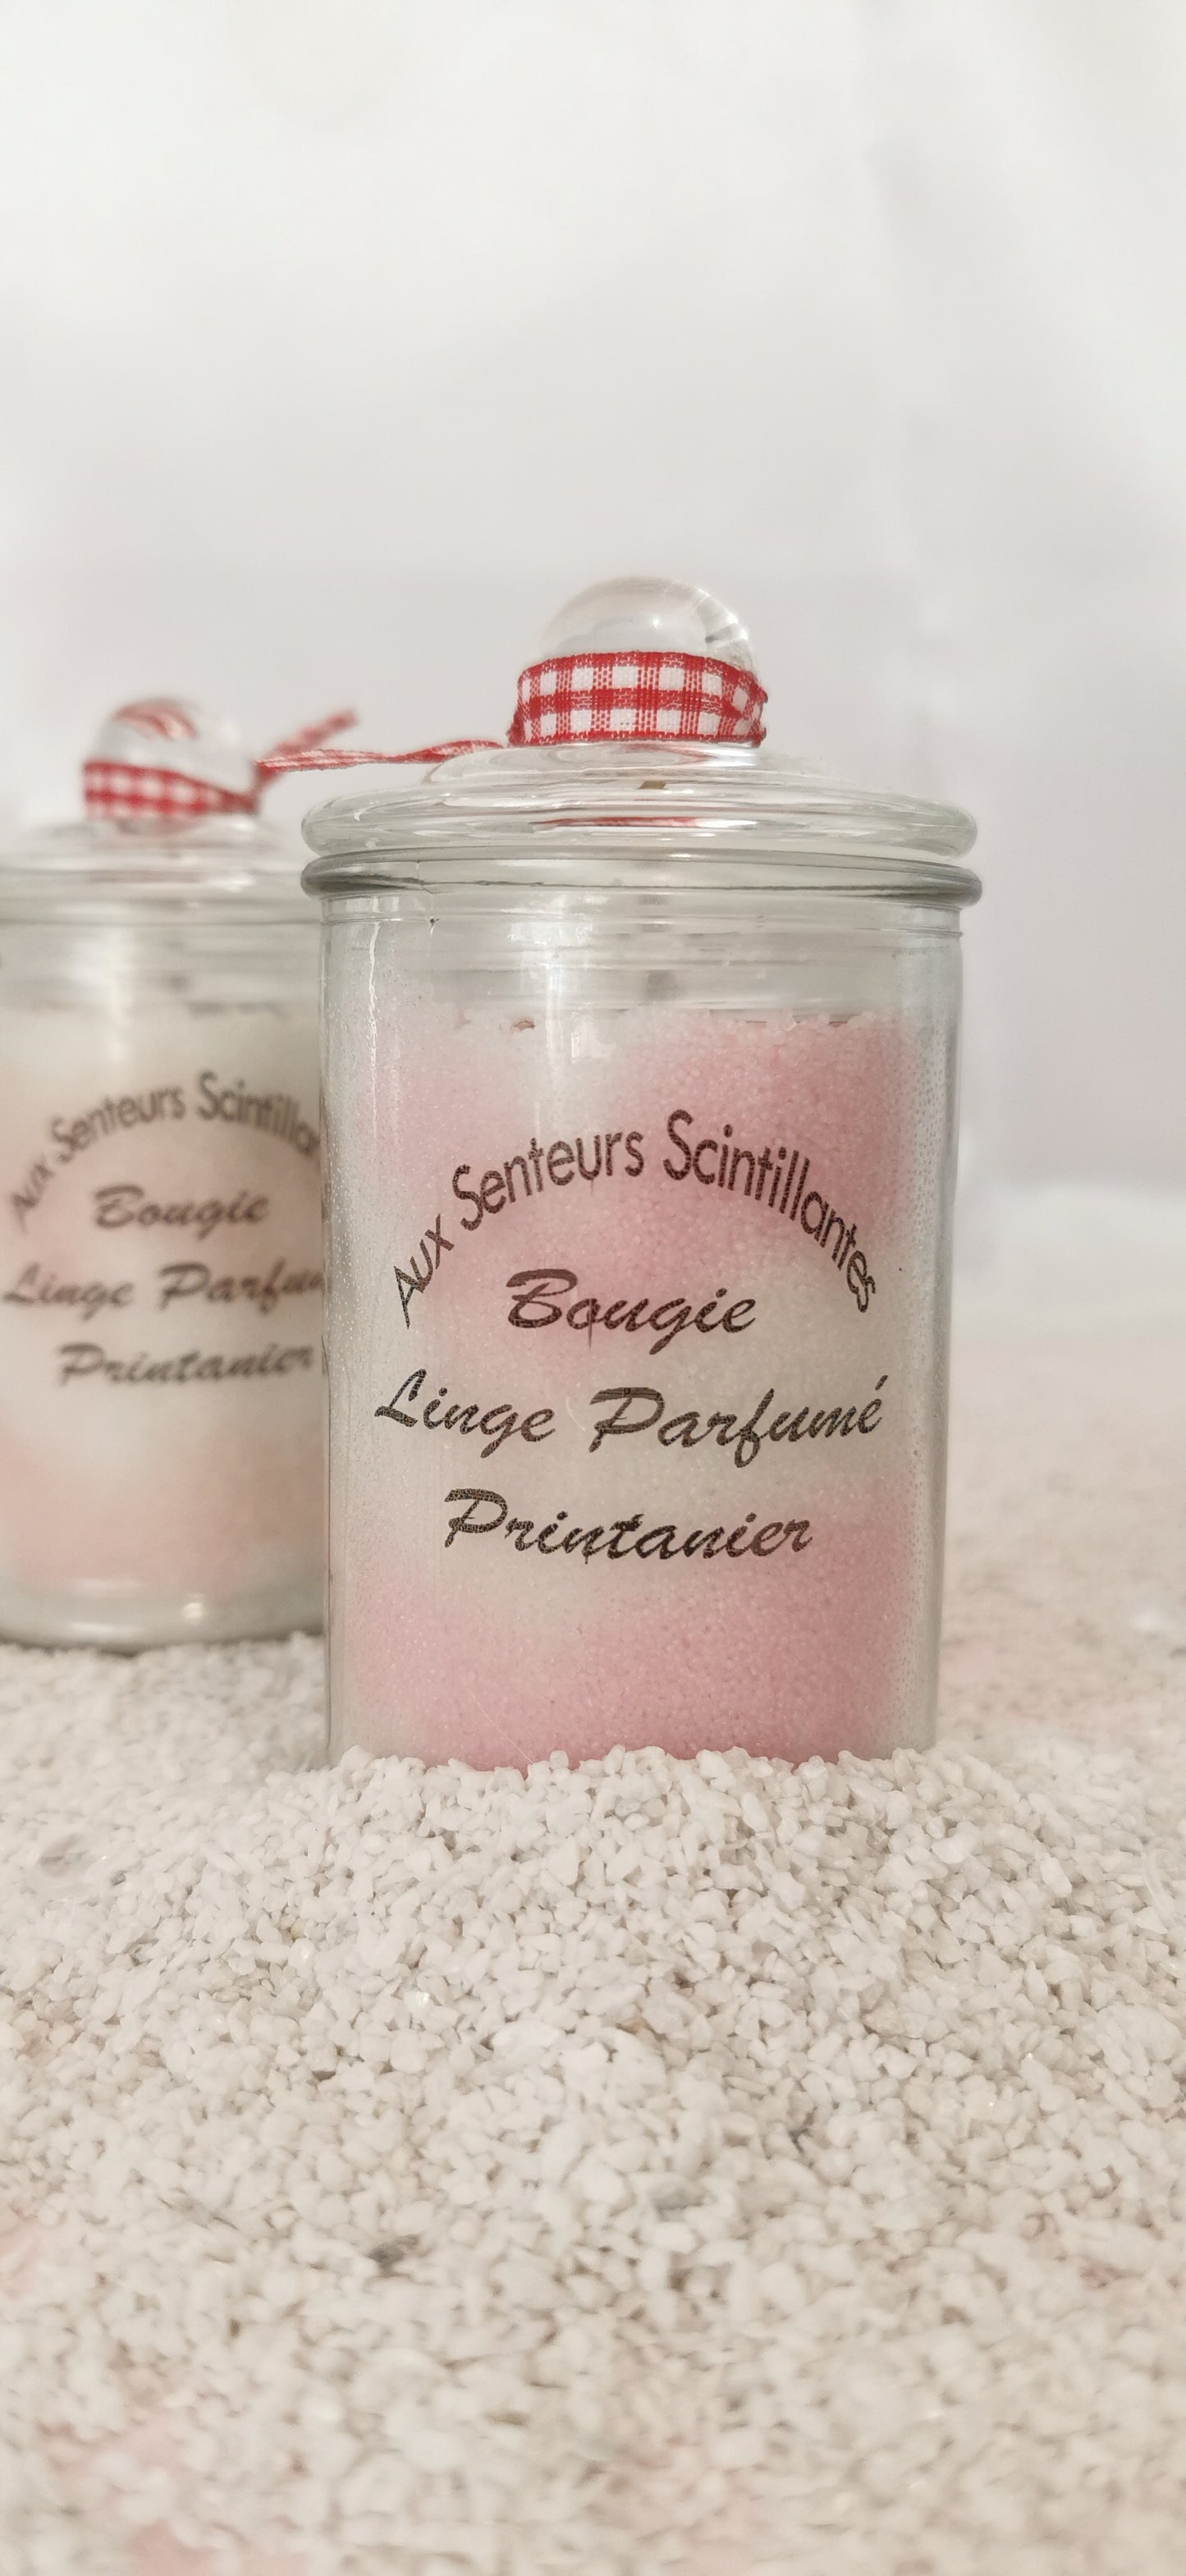 Bougie parfumée SABLISSIME collection "Linge parfumé"